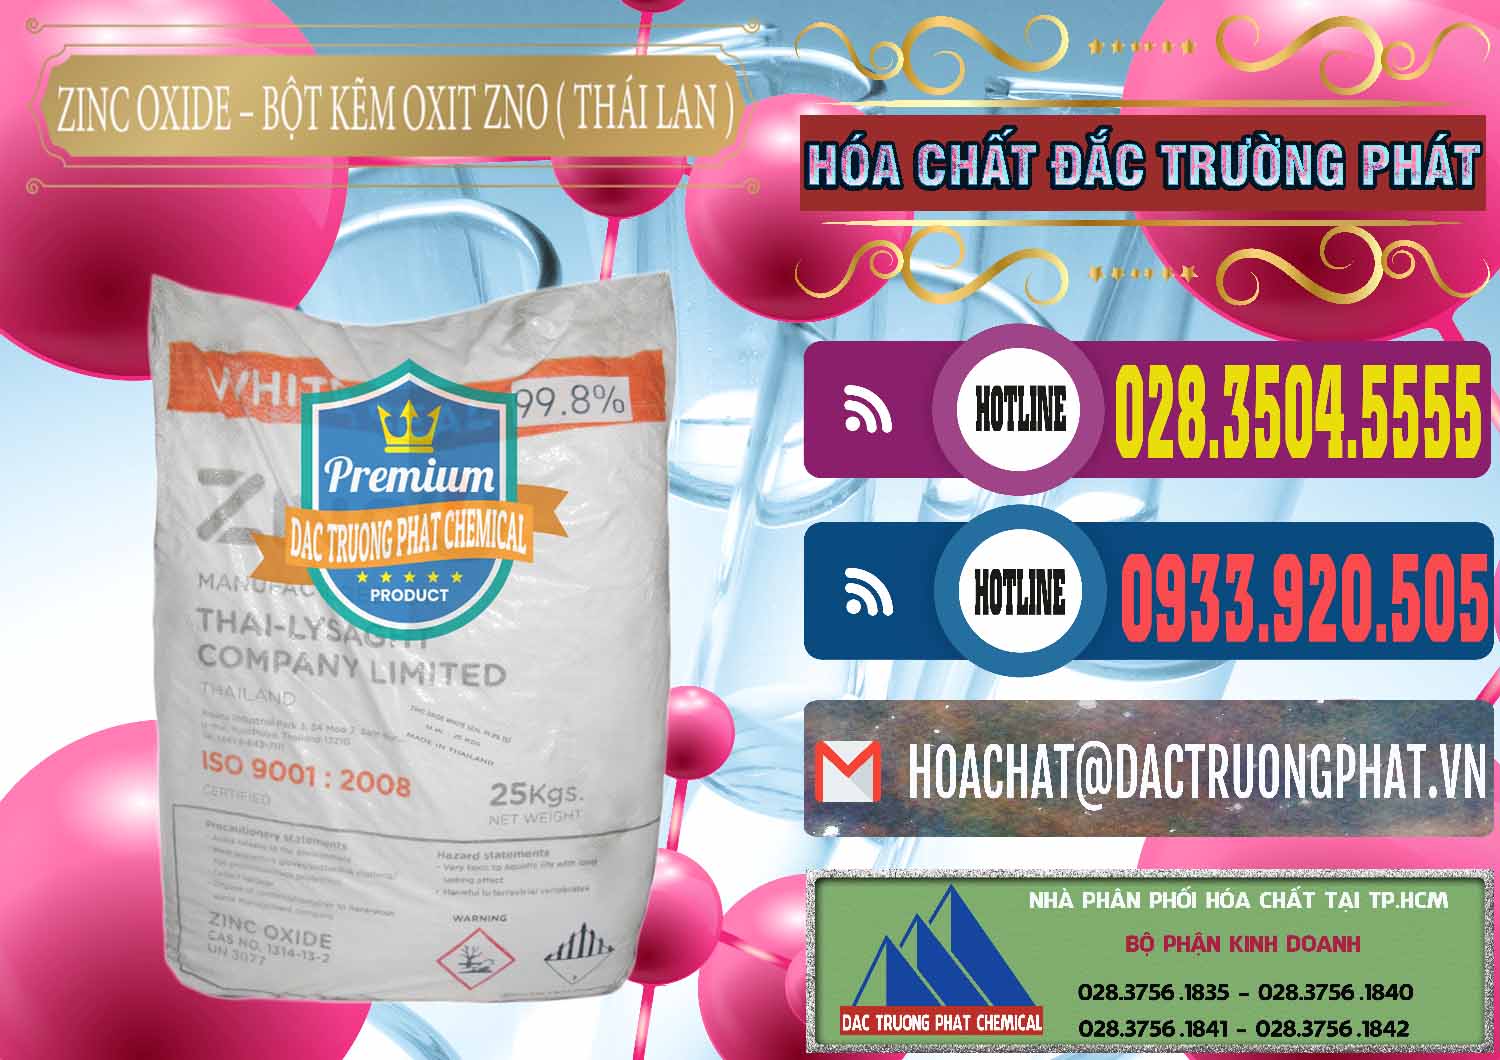 Cty chuyên kinh doanh và bán Zinc Oxide - Bột Kẽm Oxit ZNO Thái Lan Thailand - 0181 - Nơi nhập khẩu ( cung cấp ) hóa chất tại TP.HCM - muabanhoachat.com.vn